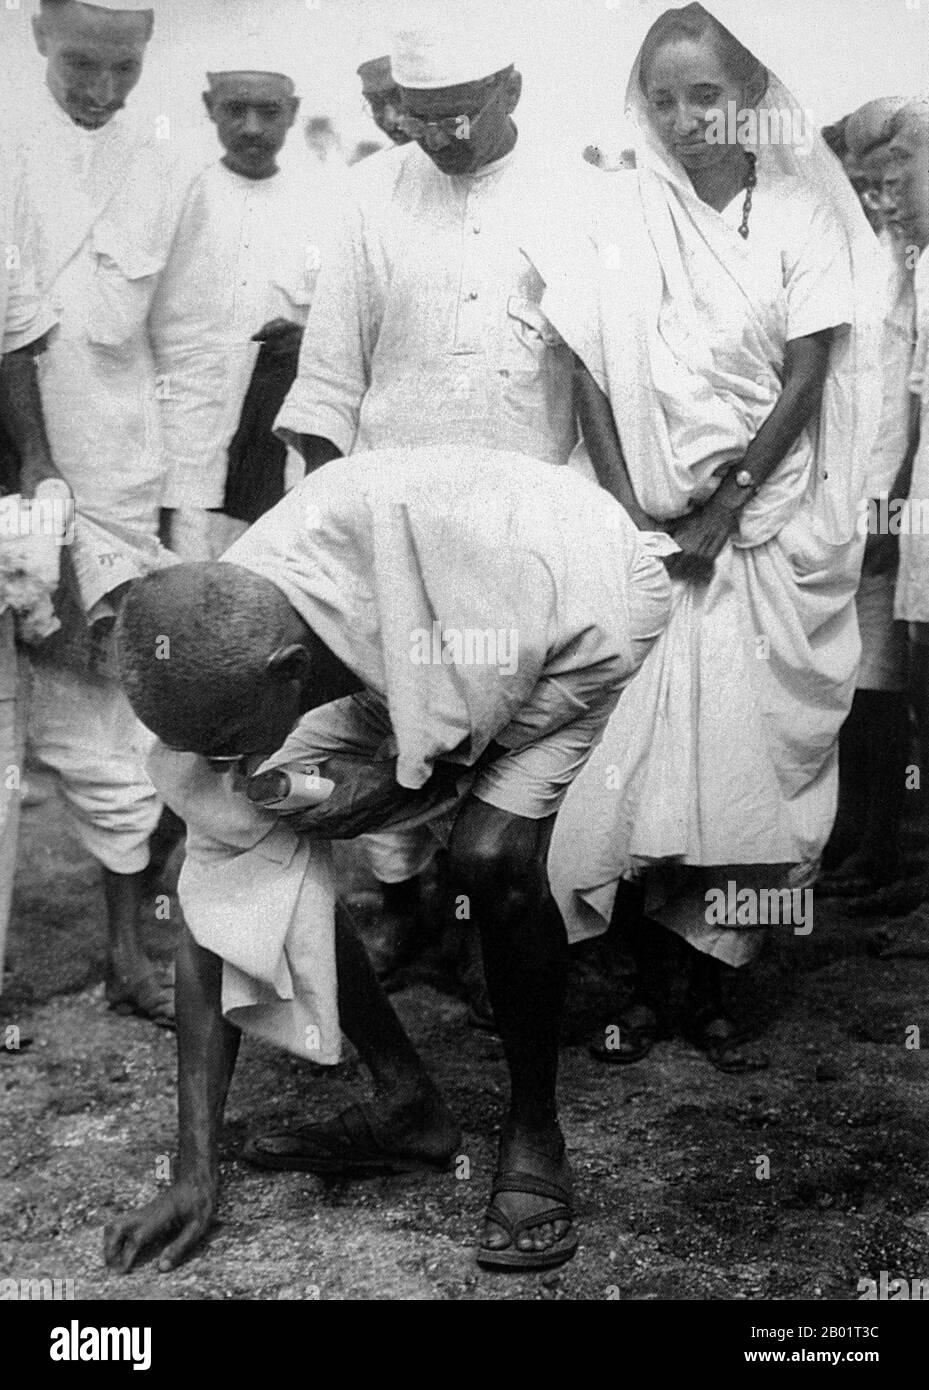 Inde : Mahatma Gandhi (2 octobre 1869 - 30 janvier 1948), leader politique et idéologique prééminent du mouvement indépendantiste indien, mettant fin à la Marche du sel à Dandi, le 5 avril 1930. Mohandas Karamchand Gandhi était le leader politique et idéologique prééminent de l'Inde pendant le mouvement d'indépendance indienne. Il a été le pionnier du satyagraha. Ceci est défini comme la résistance à la tyrannie par la désobéissance civile de masse, une philosophie fermement fondée sur l'ahimsa, ou la non-violence totale. Ce concept a aidé l’Inde à gagner son indépendance et inspiré des mouvements pour les droits civils et la liberté à travers le monde. Banque D'Images